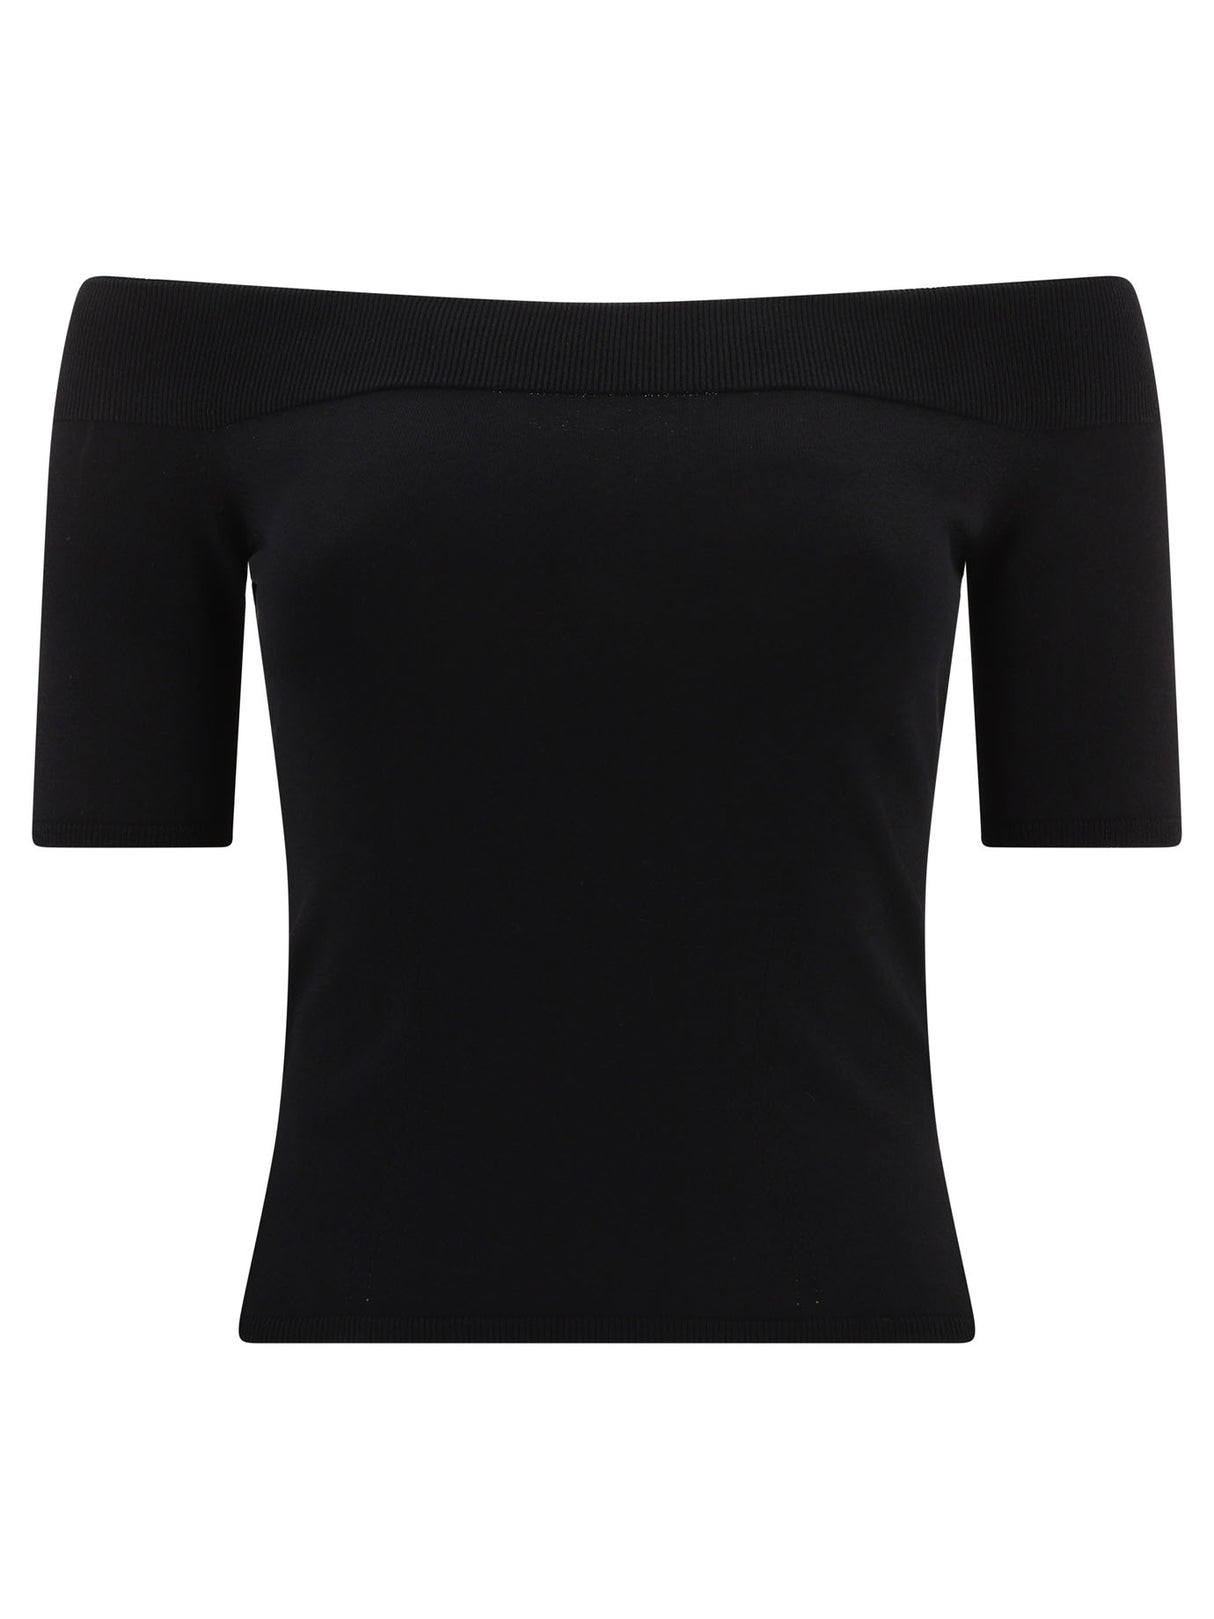 Áo cổ thuyền phong cách đen dành cho phụ nữ - Cỡ vừa, cổ, bo viền cổ tay và cạp